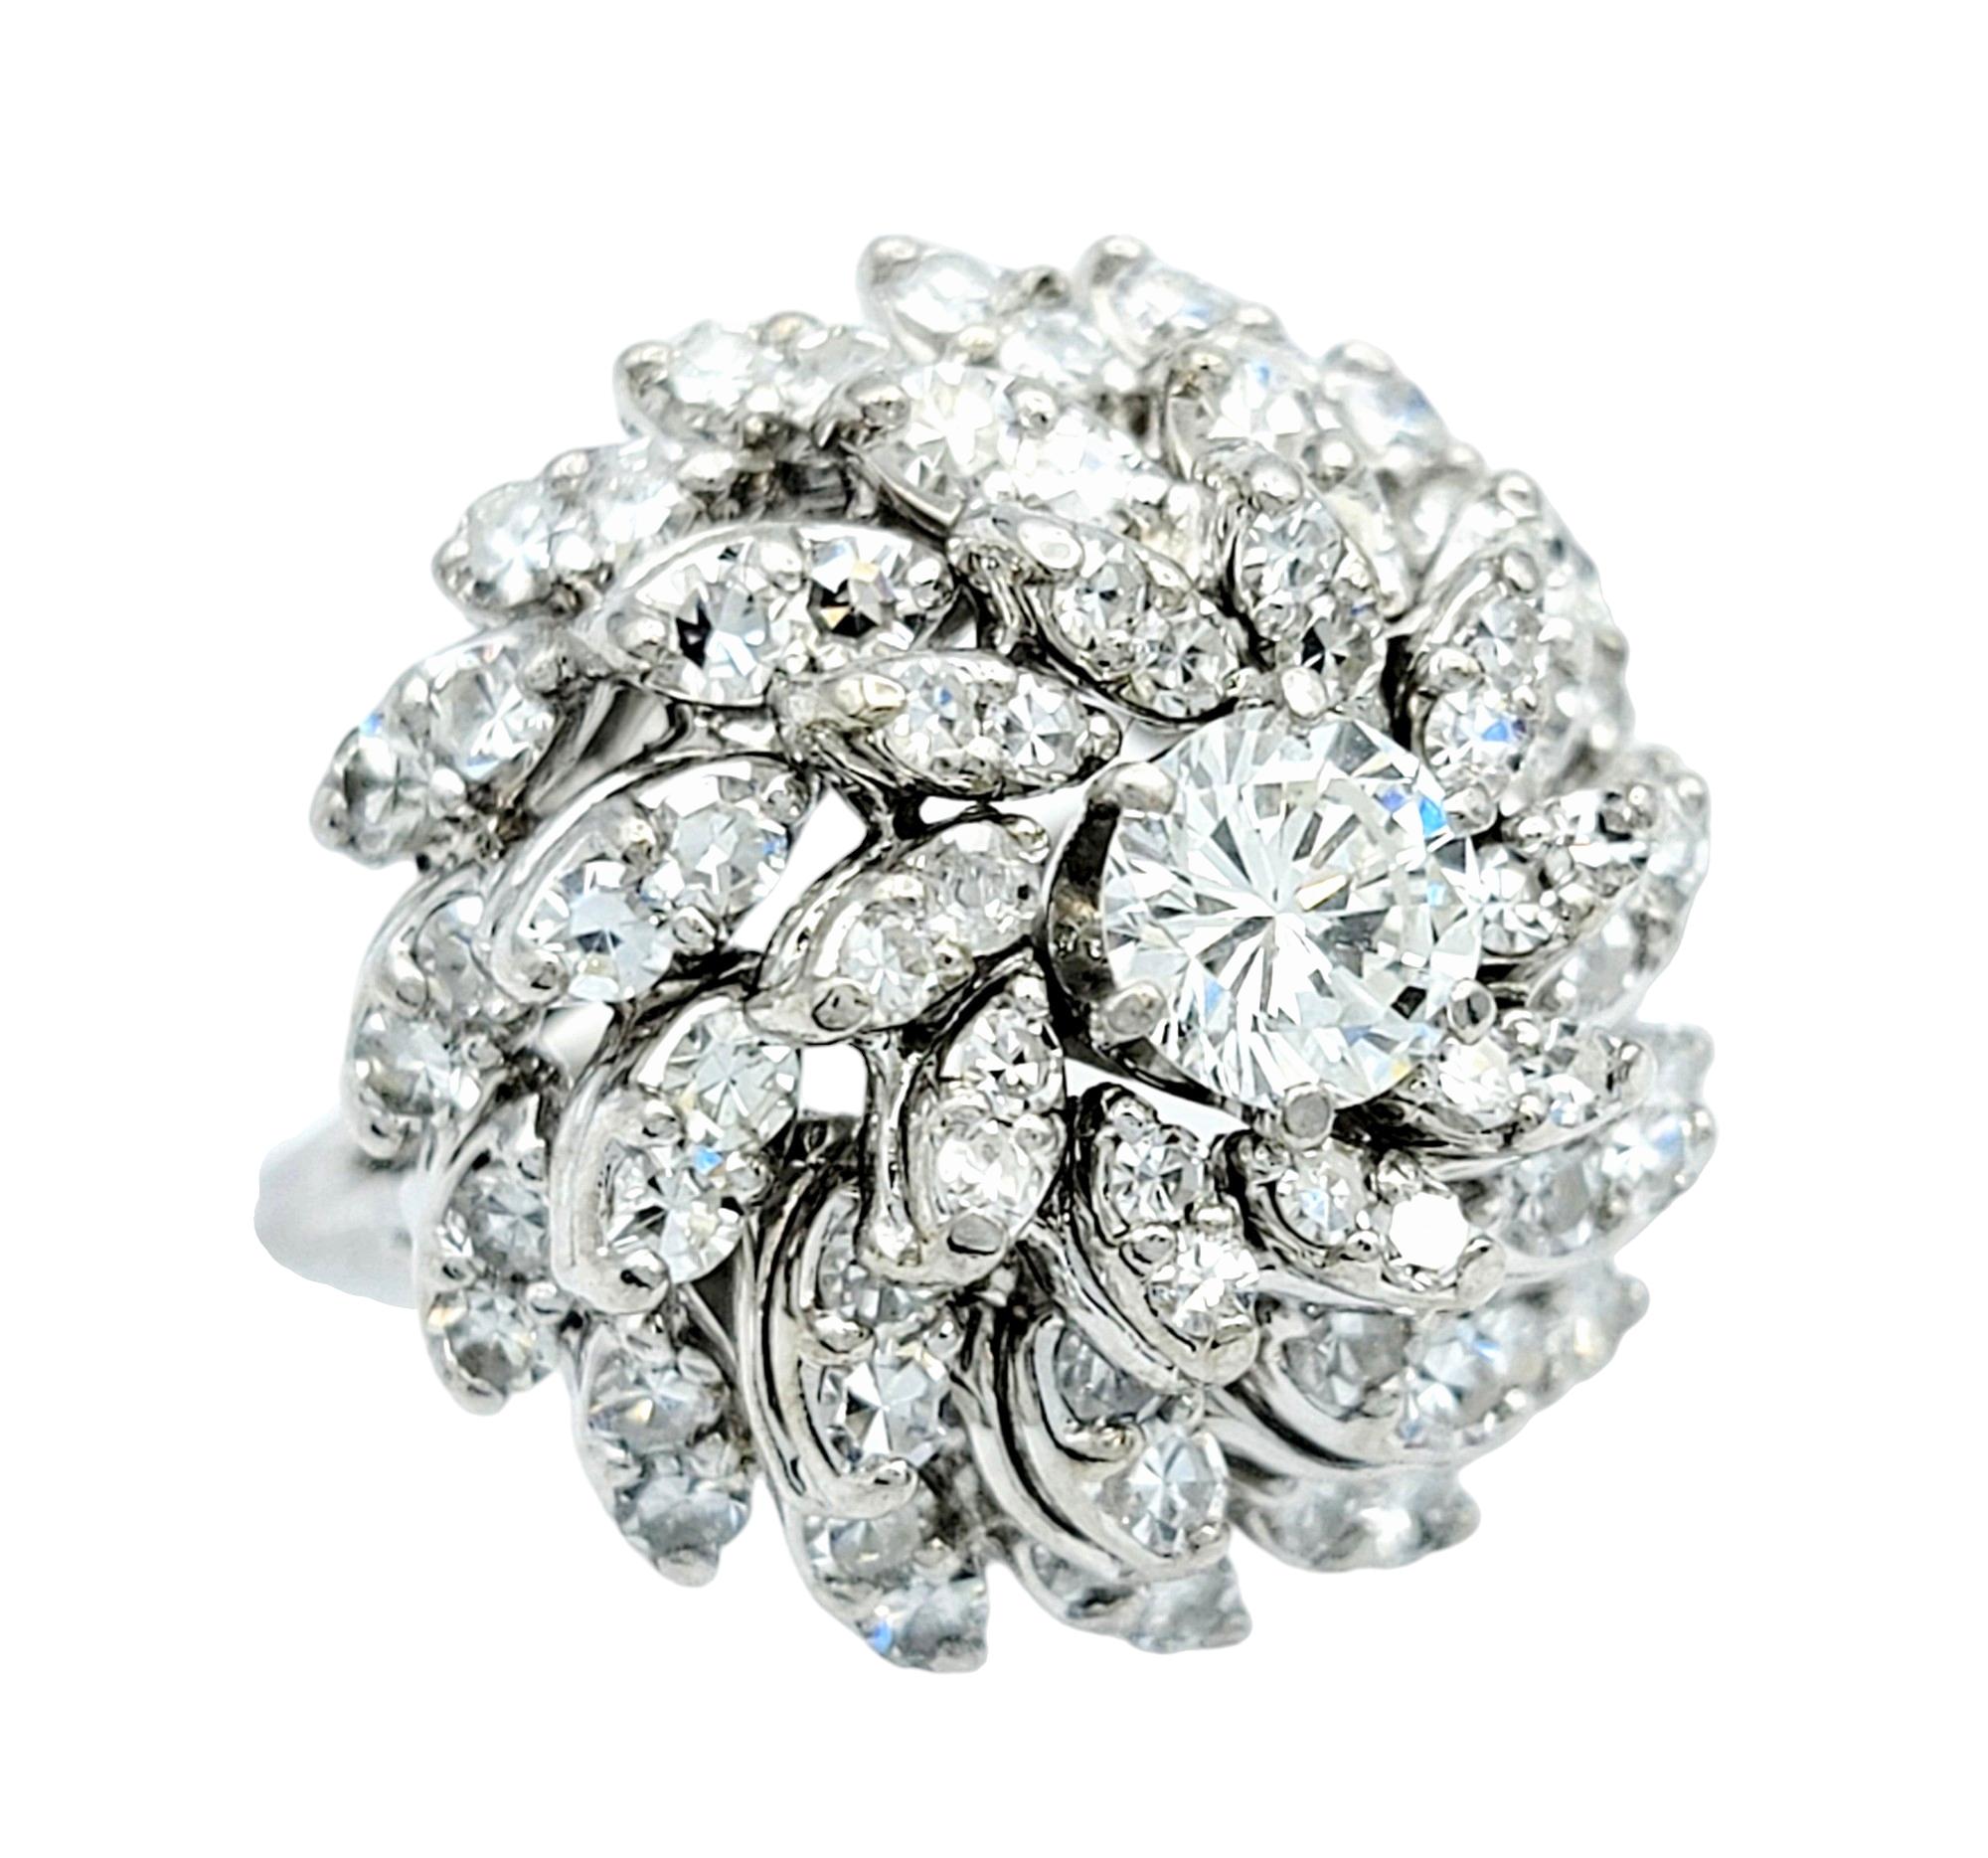 Ringgröße: 5.25

Dieser atemberaubende Diamant-Cocktailring im Ballerina-Stil ist das perfekte Stück, um Ihre Hand mit Eleganz zu schmücken. Dieser prächtige Ring aus glänzendem 14-karätigem Weißgold besticht durch sein kühnes und luxuriöses Design.